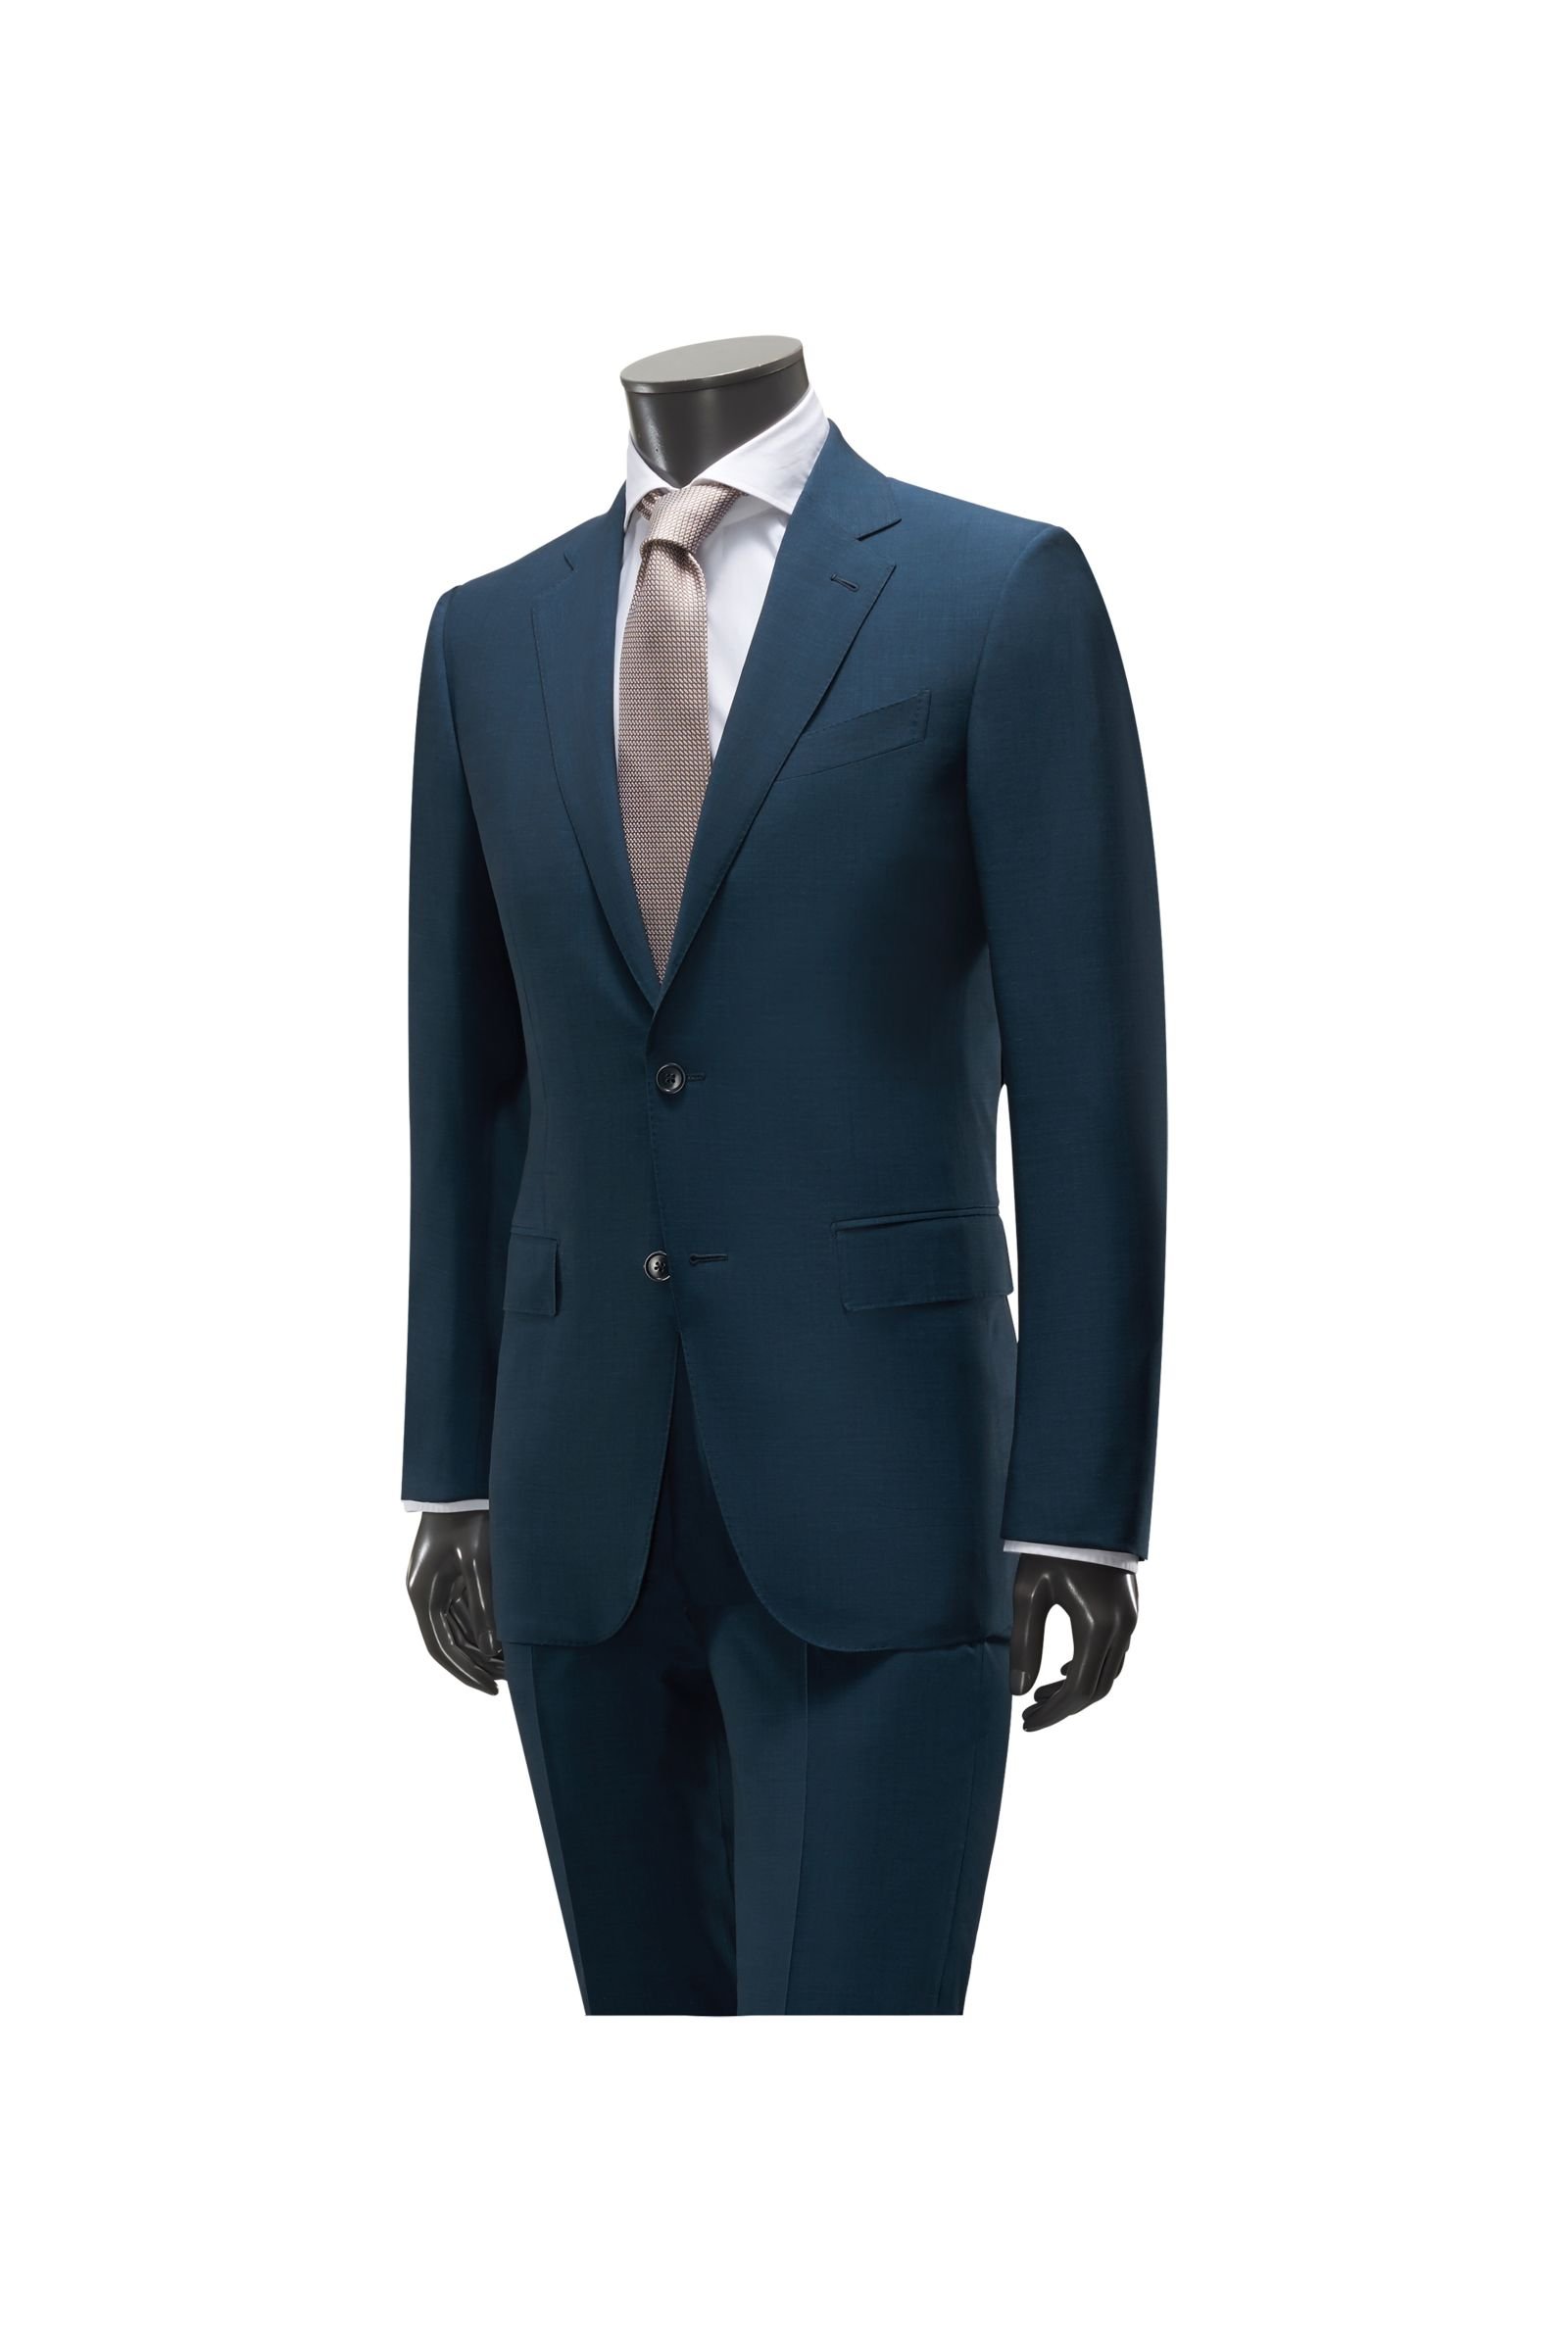 Suit 'Milano regular fit' dark blue